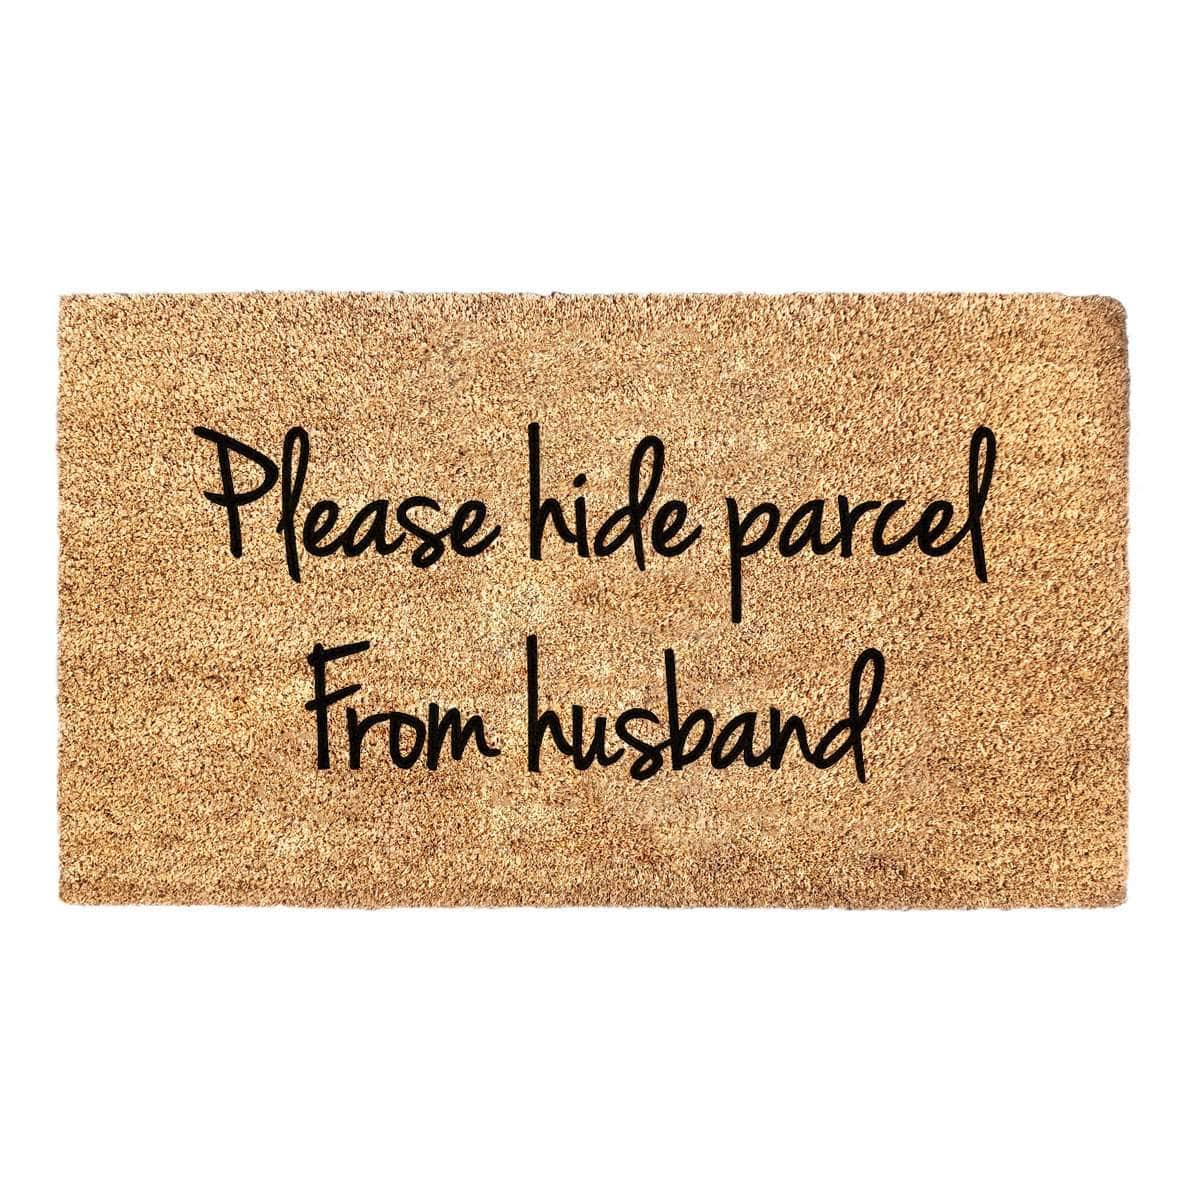 Hide Parcel From Husband  - Doormat